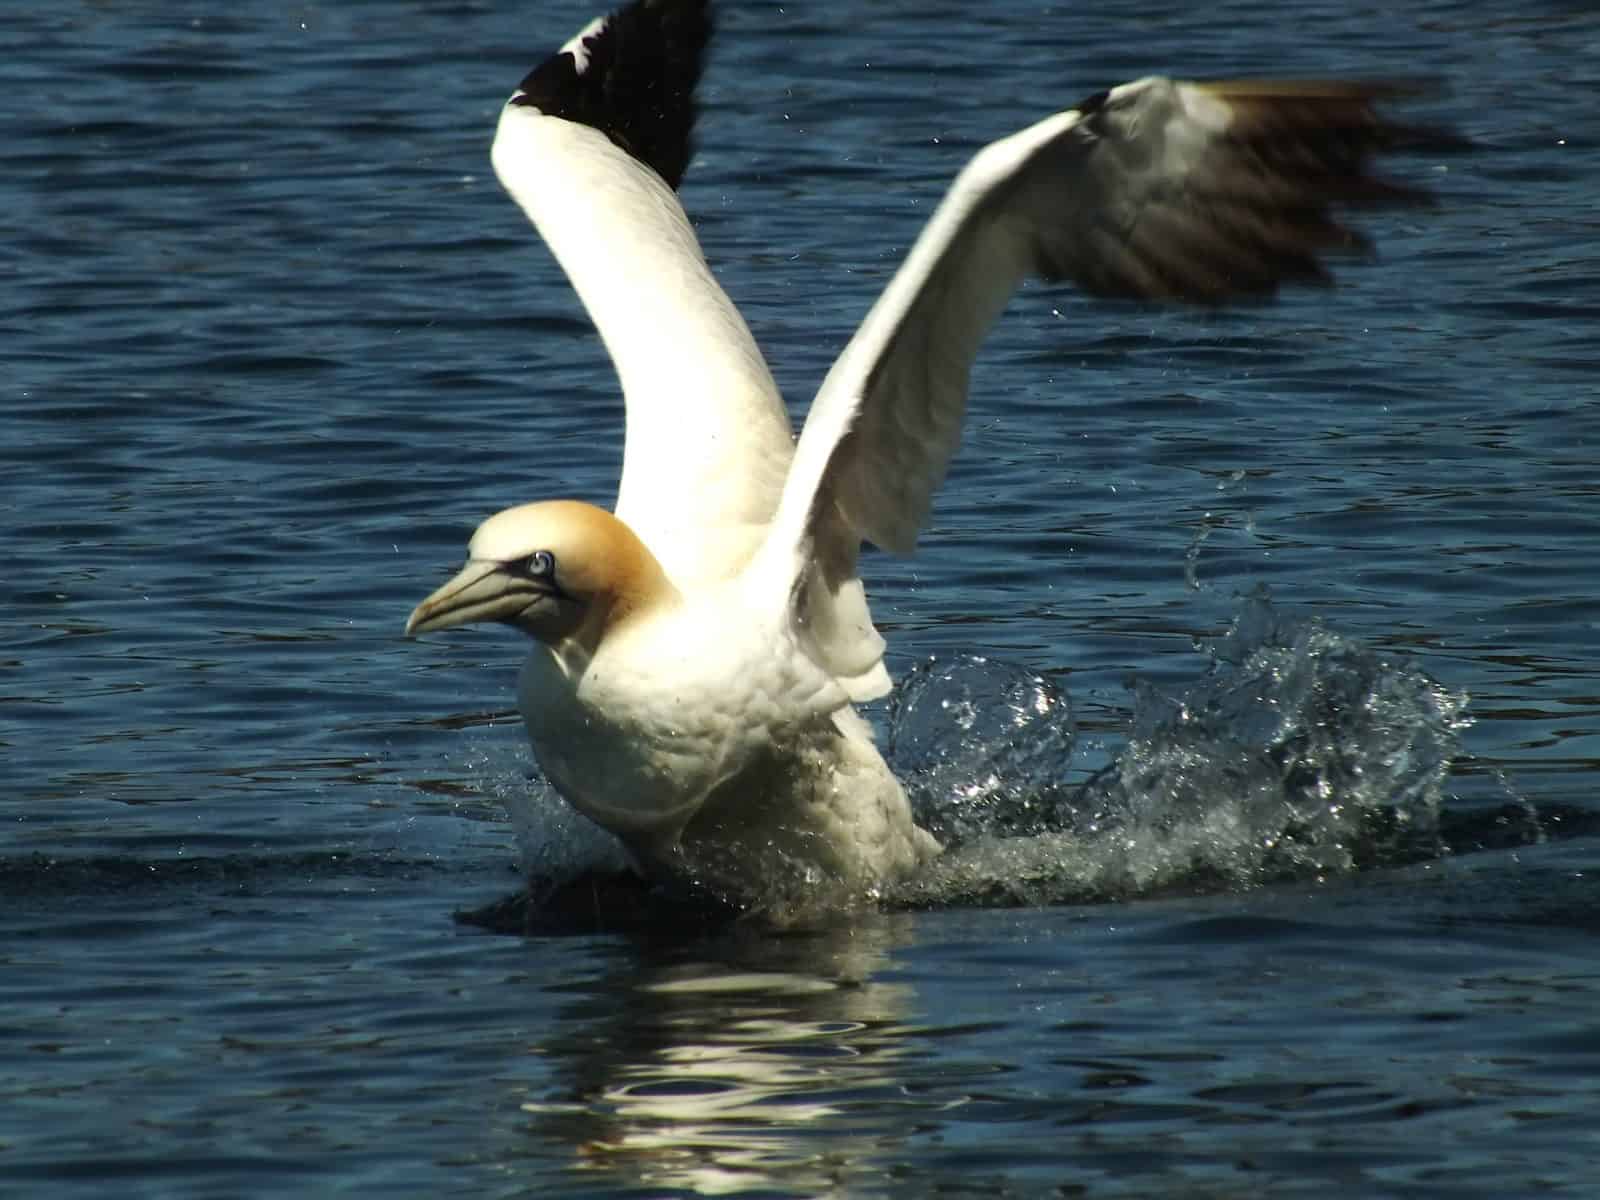 Sea bird landing on water